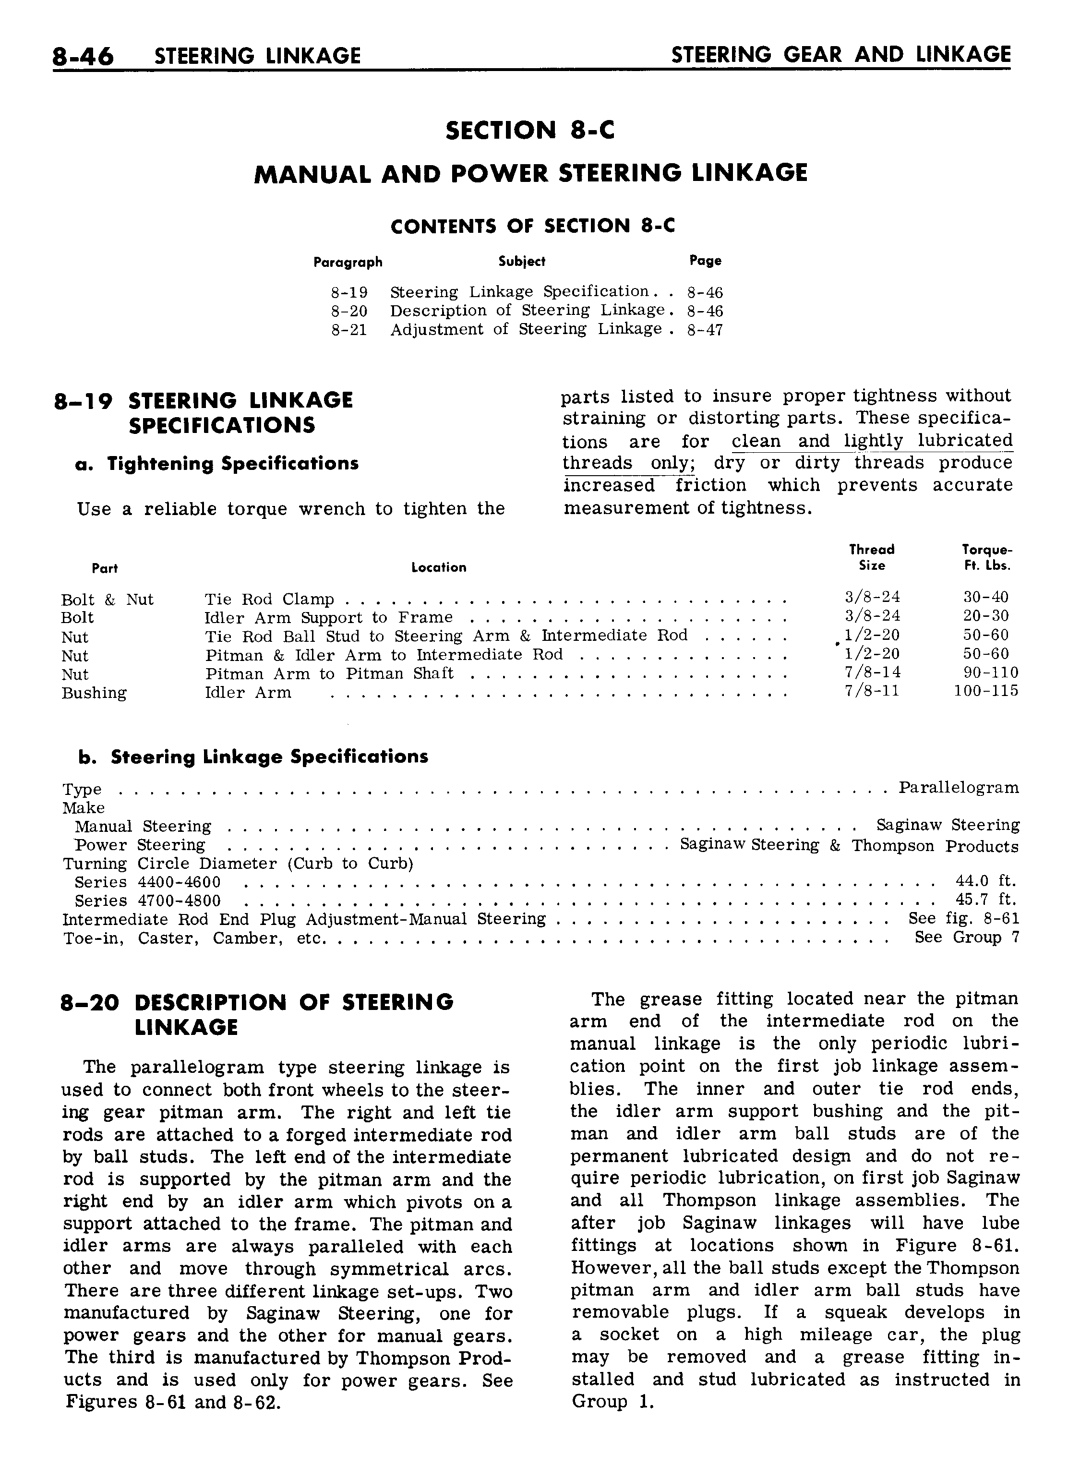 n_08 1961 Buick Shop Manual - Steering-046-046.jpg